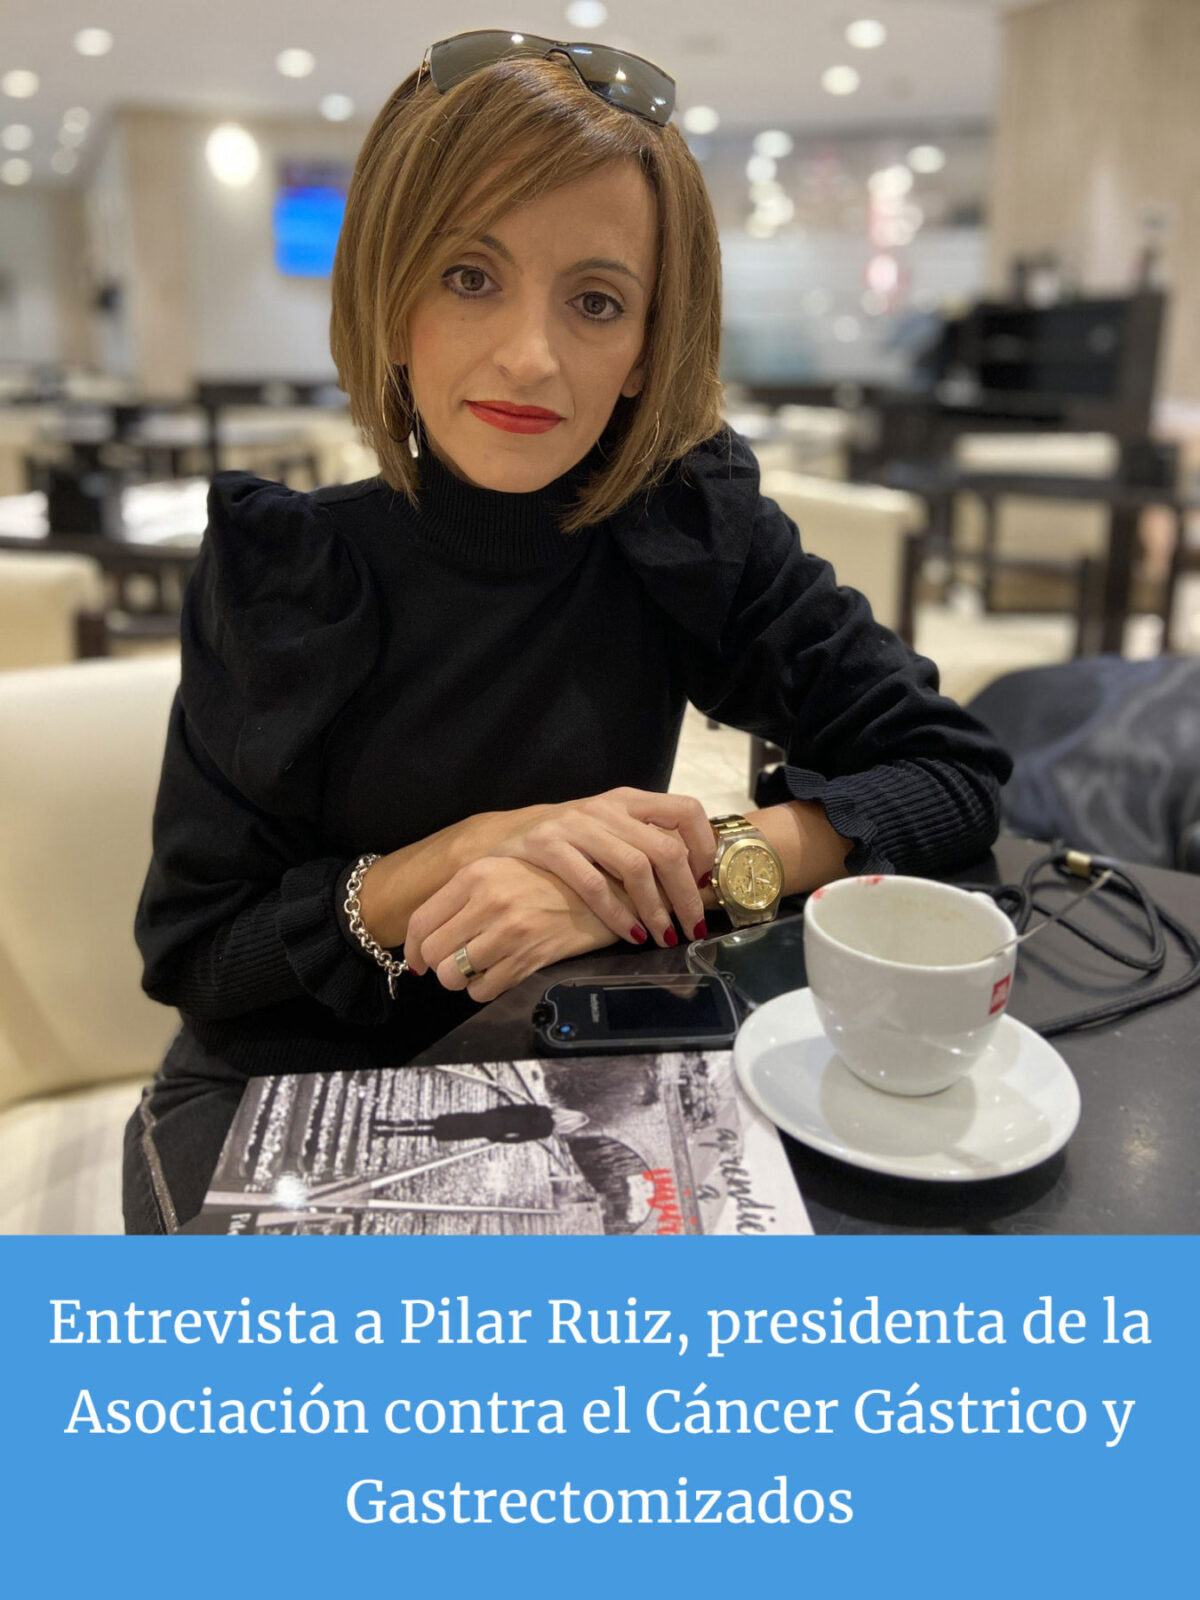 Pilar Ruiz, Presidenta de la Asociación contra el Cáncer Gástrico y Gastrectomizados